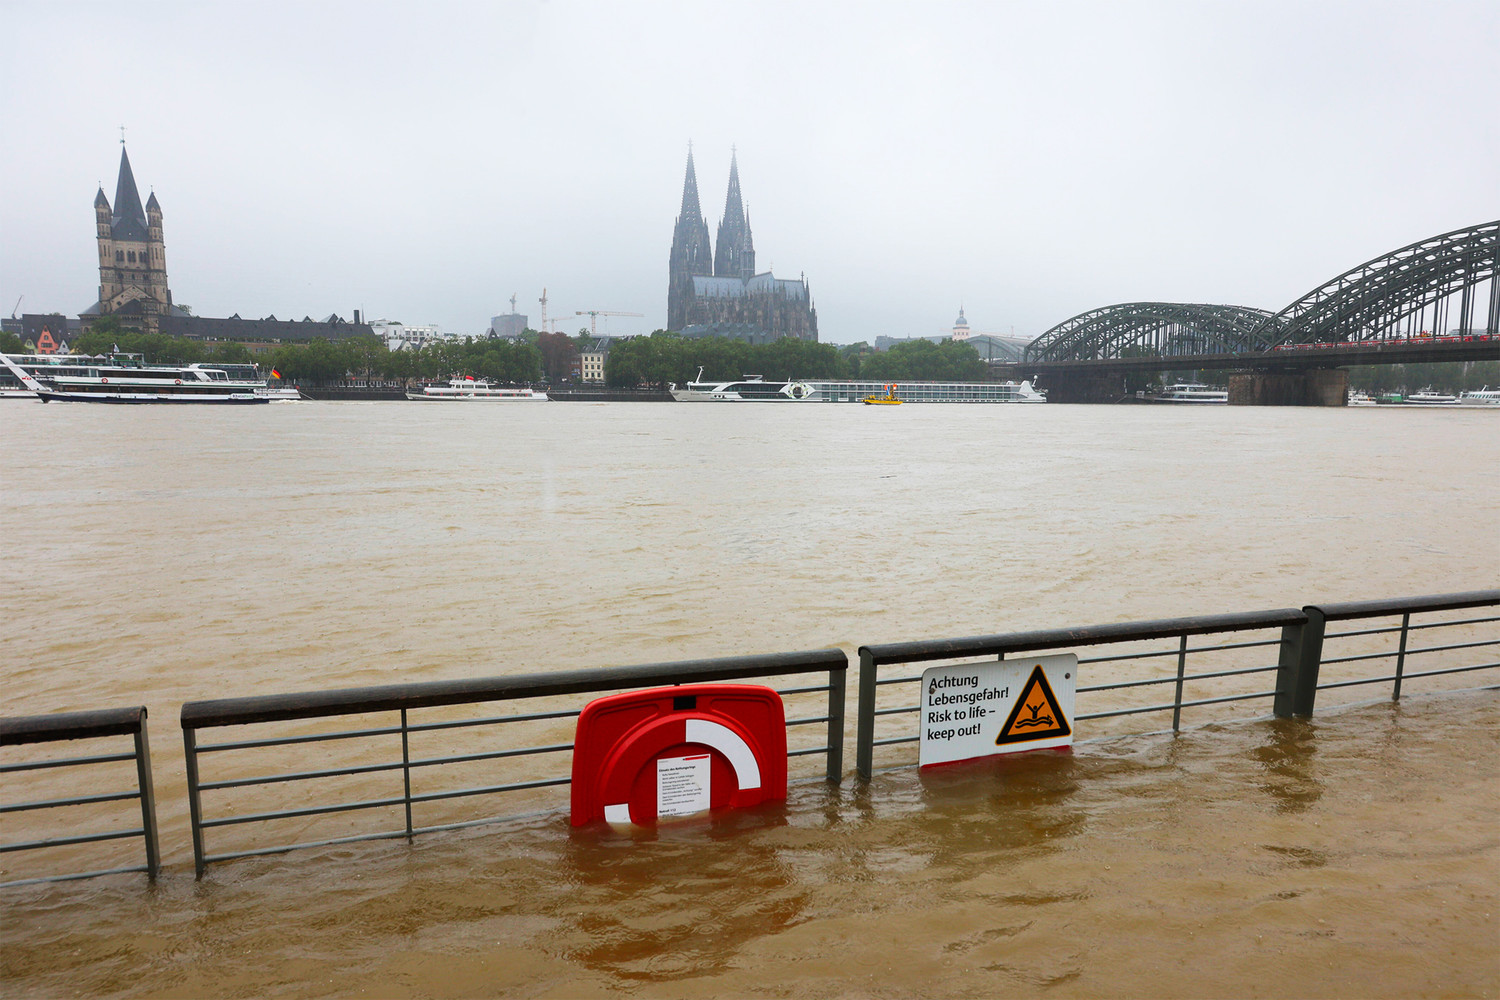 Hơn một nghìn người mất tích, hàng chục người thiệt mạng do lũ lụt ở Đức